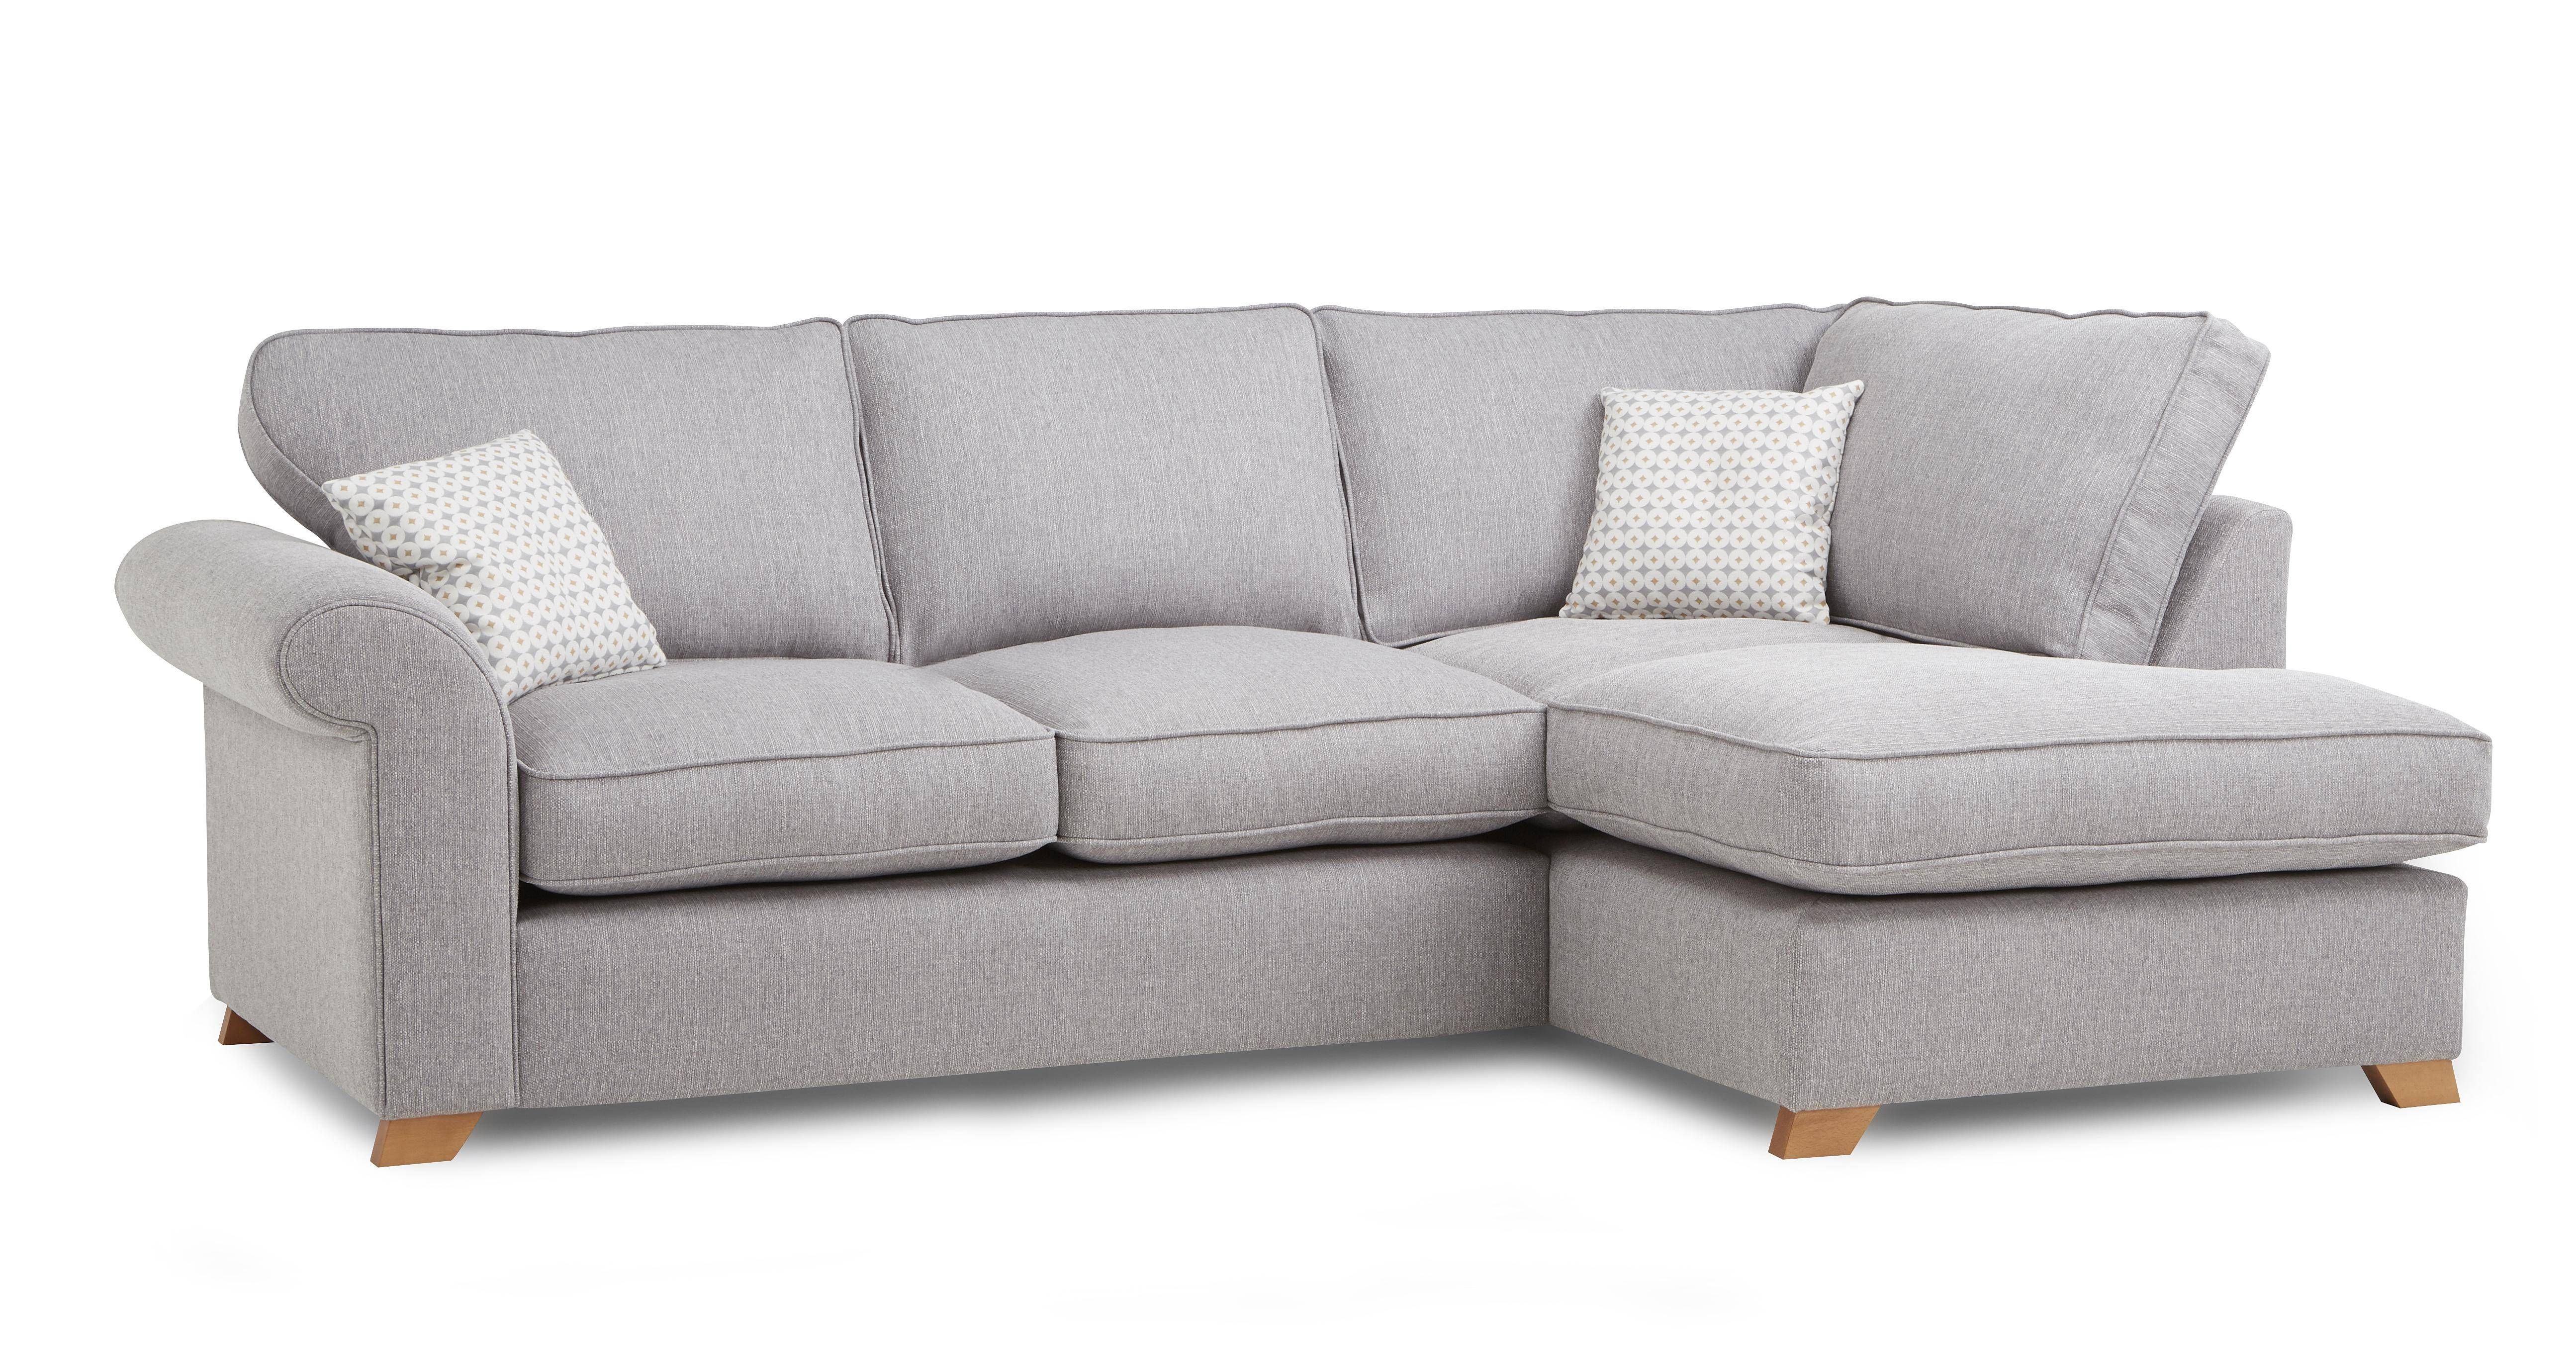 Sofas Center : Fascinating Cheap Grey Sofa Image Concept Smally Regarding Cheap Corner Sofas (Photo 28 of 30)